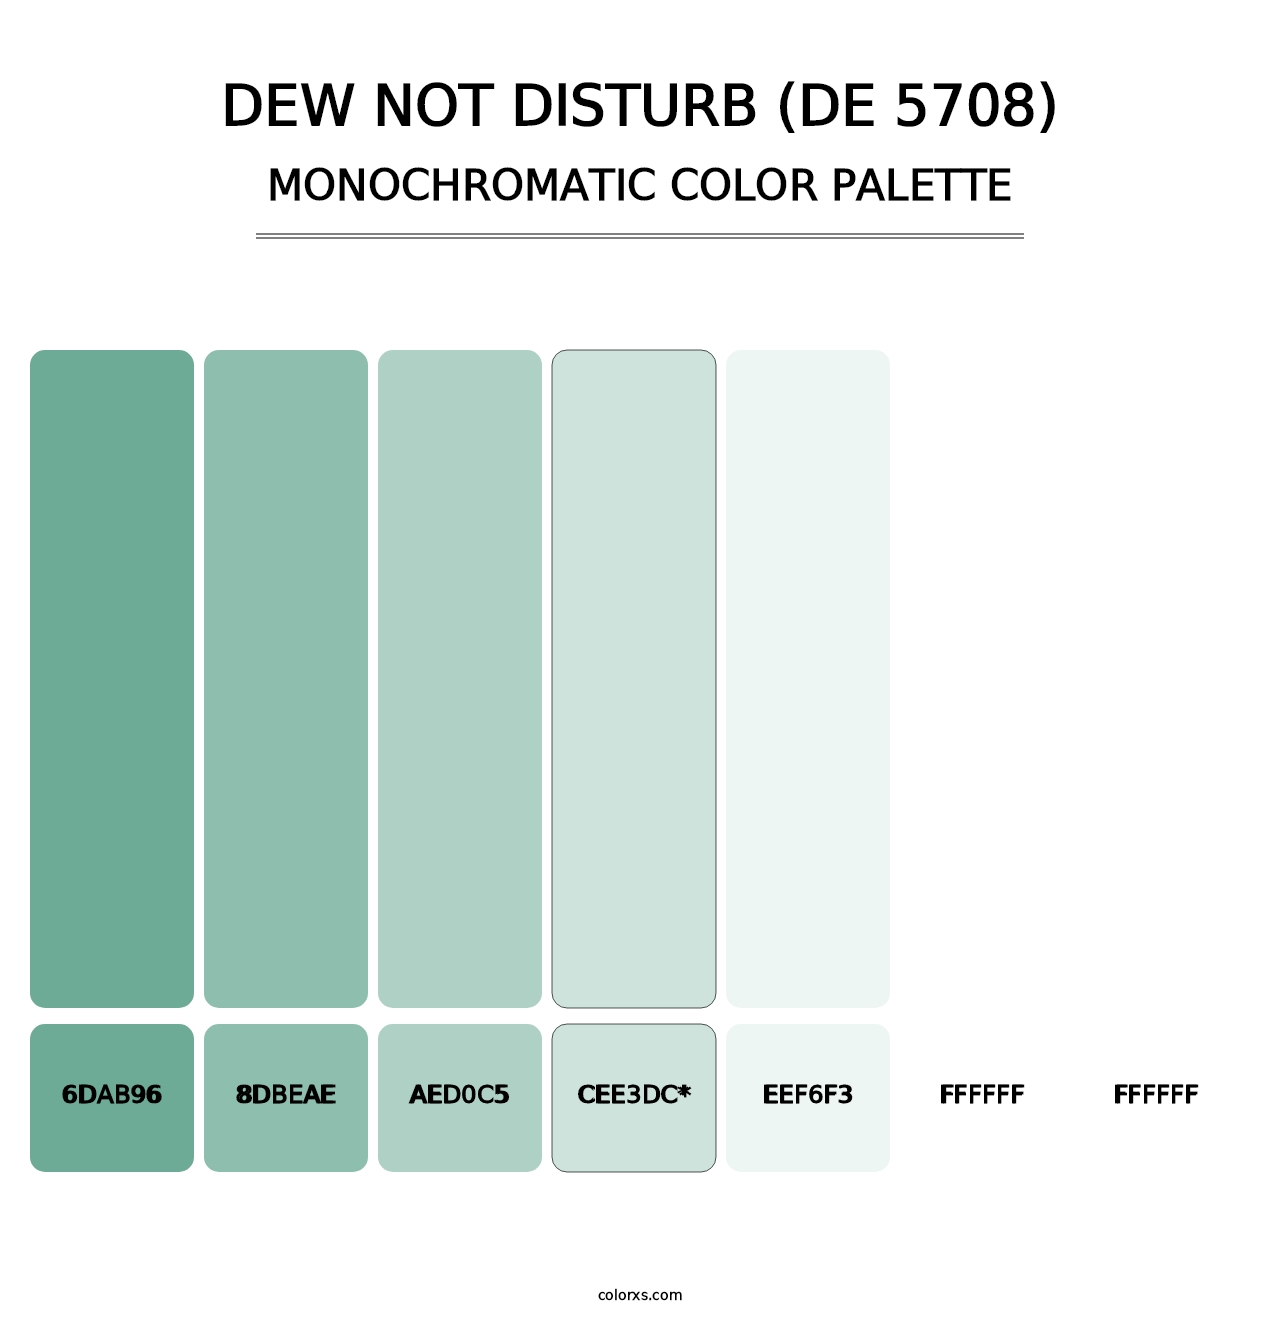 Dew Not Disturb (DE 5708) - Monochromatic Color Palette